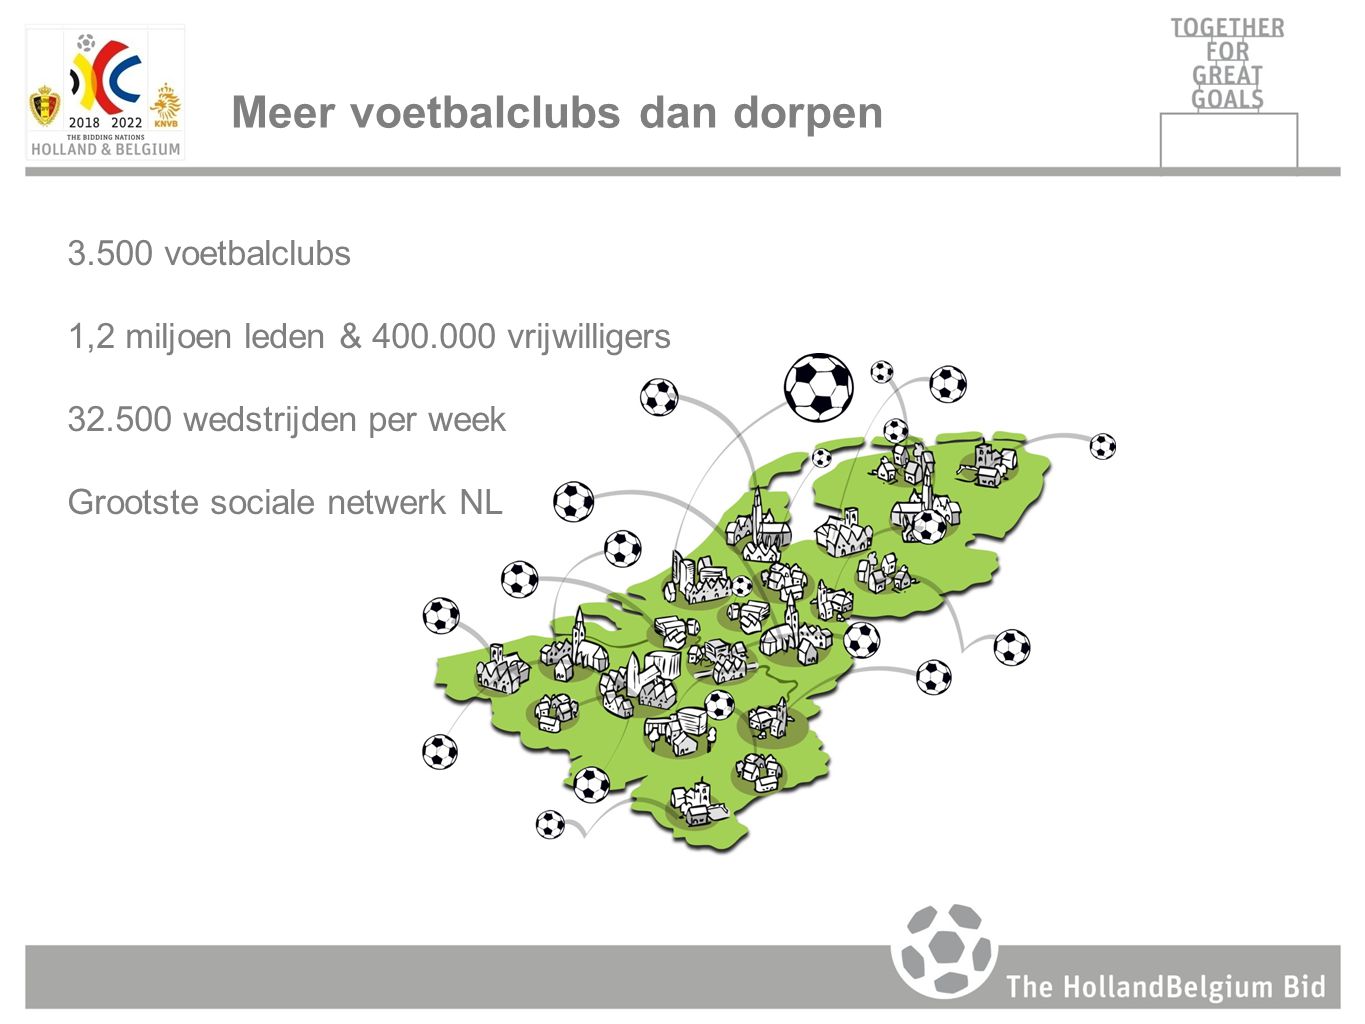 3.500 voetbalclubs 1,2 miljoen leden & vrijwilligers wedstrijden per week Grootste sociale netwerk NL Meer voetbalclubs dan dorpen